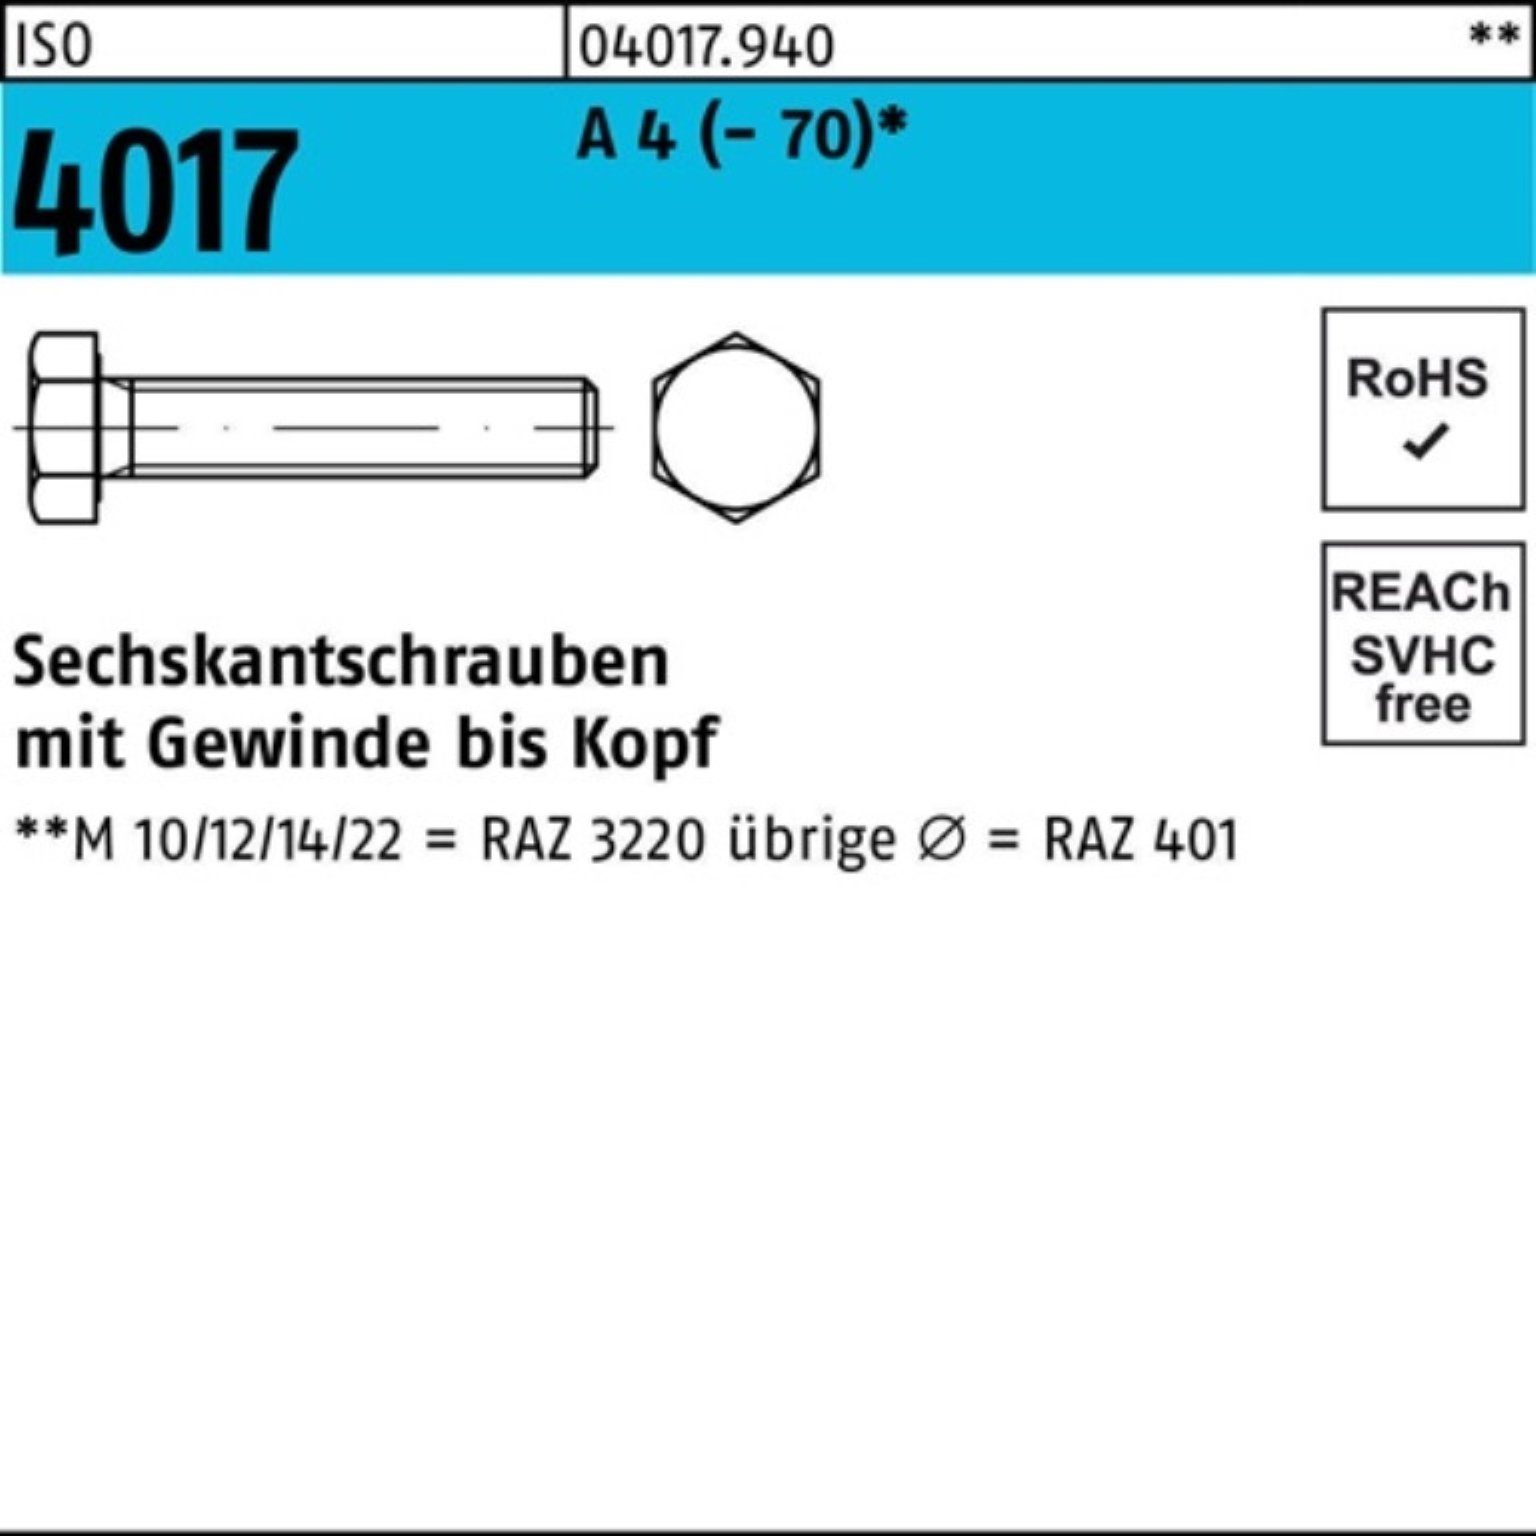 Bufab Sechskantschraube 100er 150 Stück M10x 4017 A 4 (70) 1 ISO Pack VG Sechskantschraube